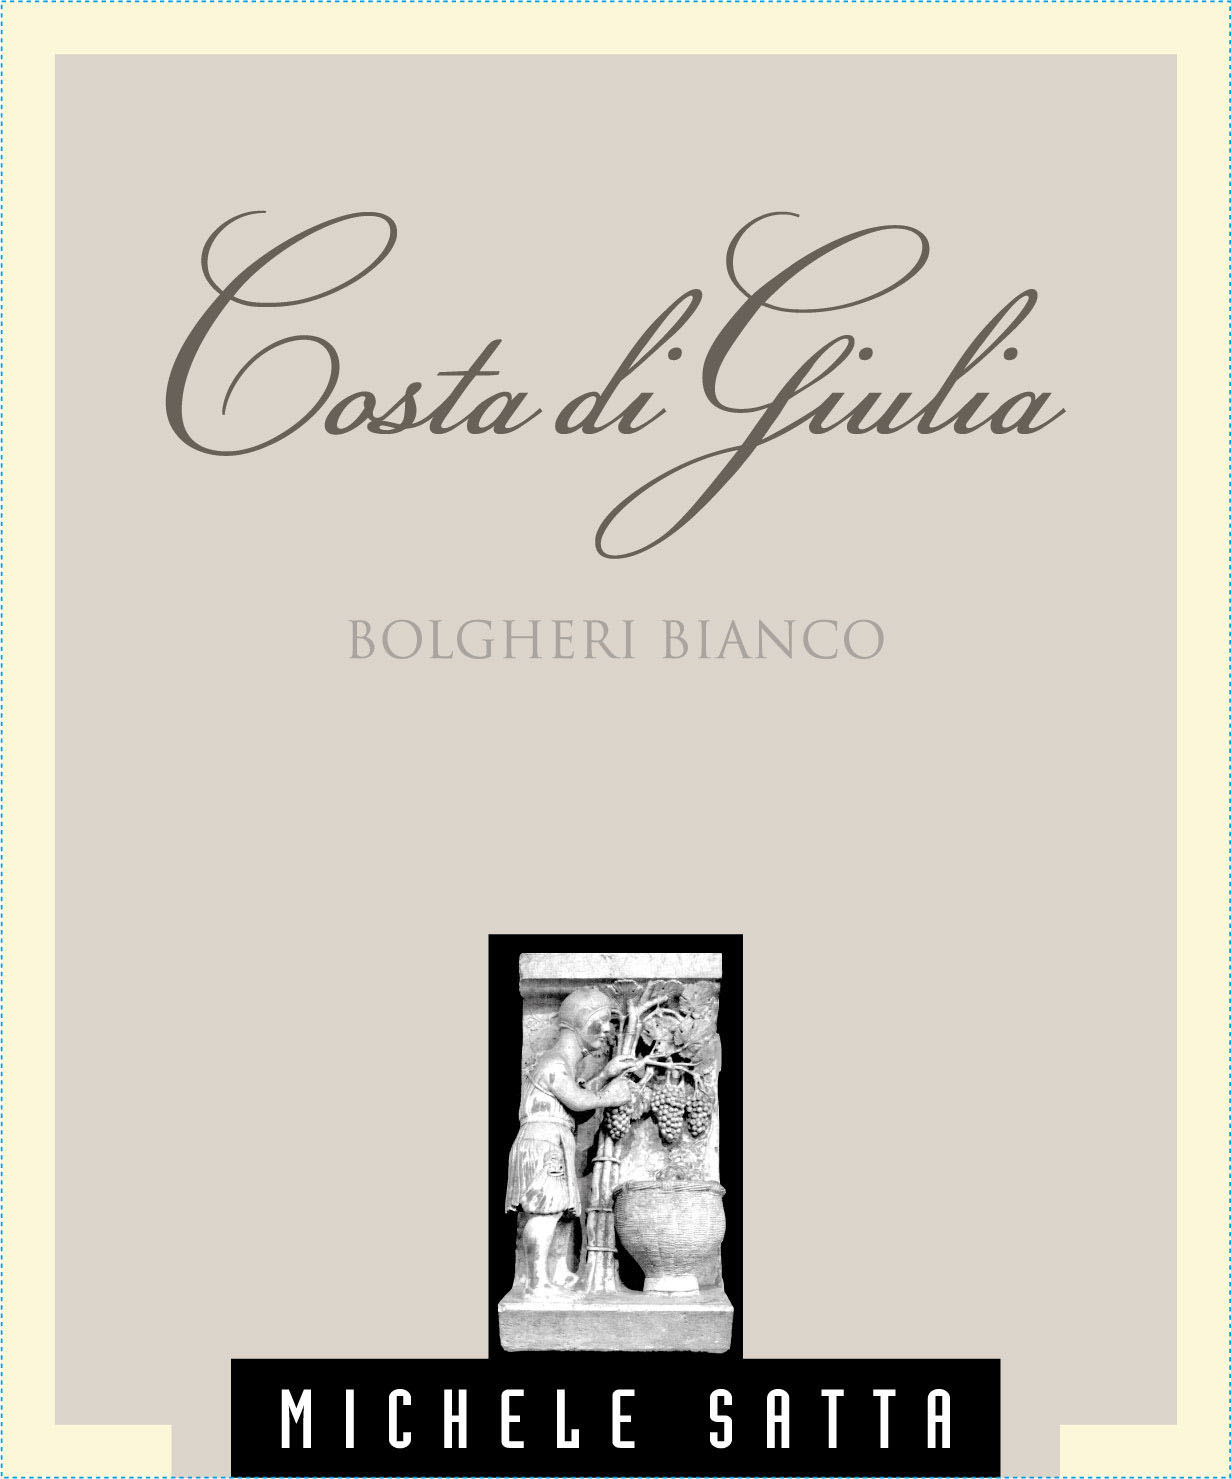 Michele Satta - Costa Di Giulia Bianco label